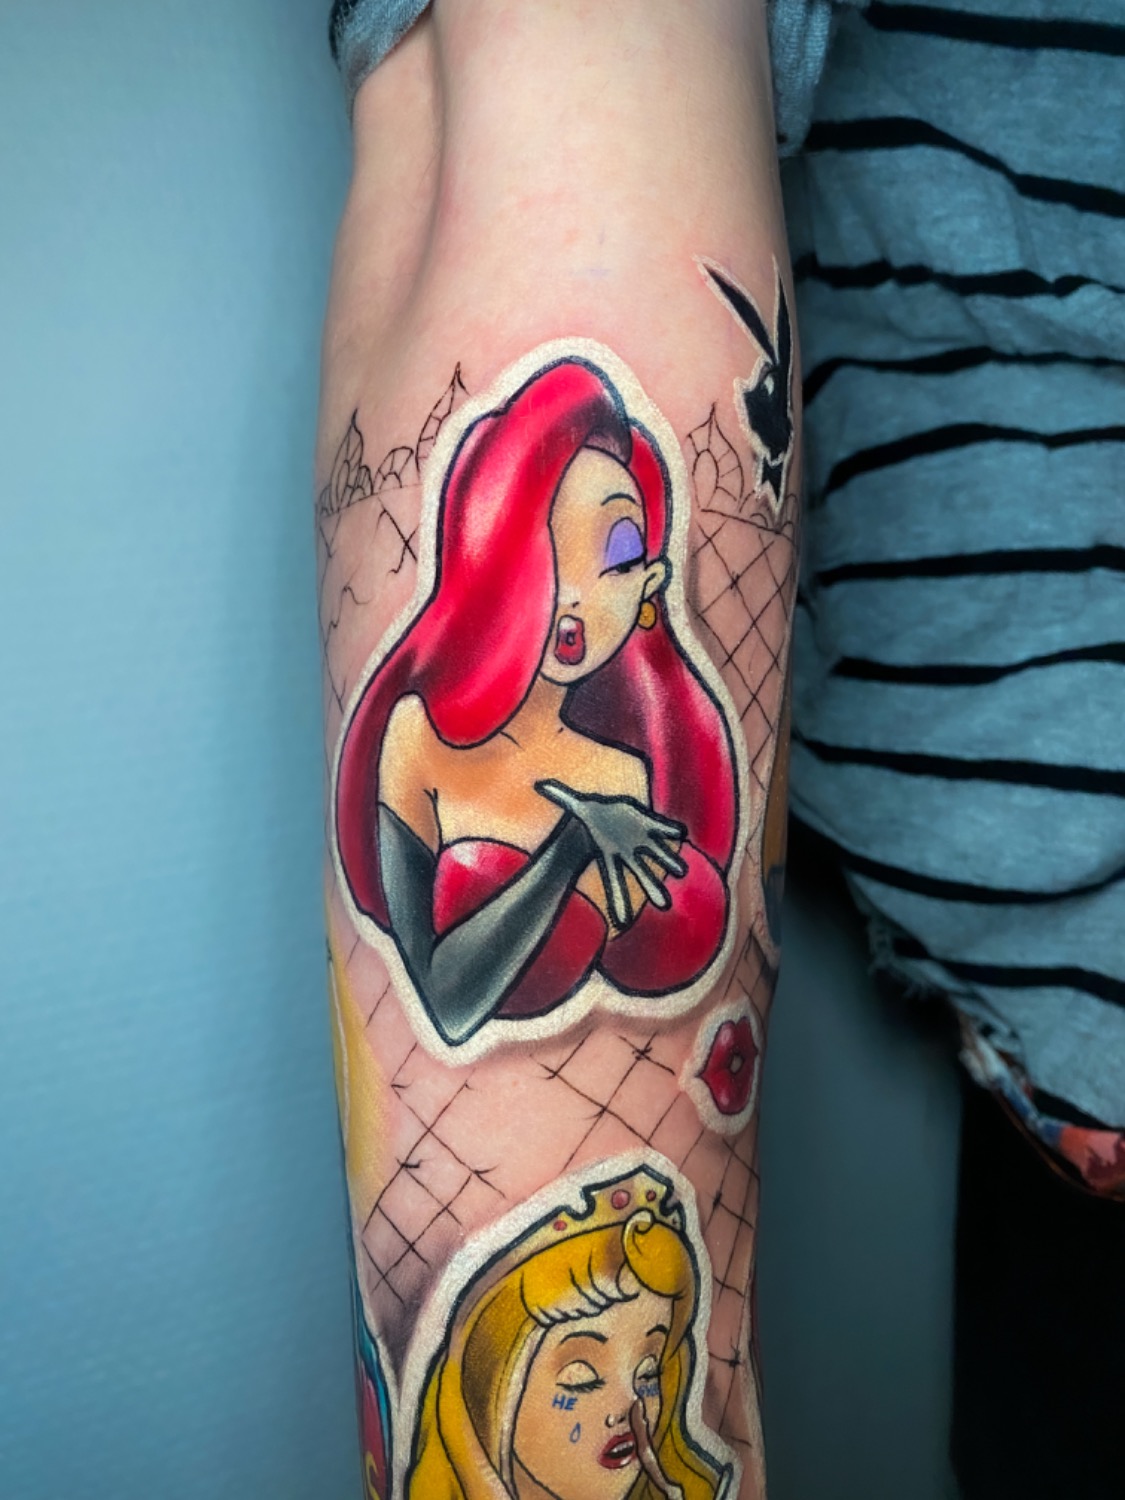 Jessica Rabbit Tattoos